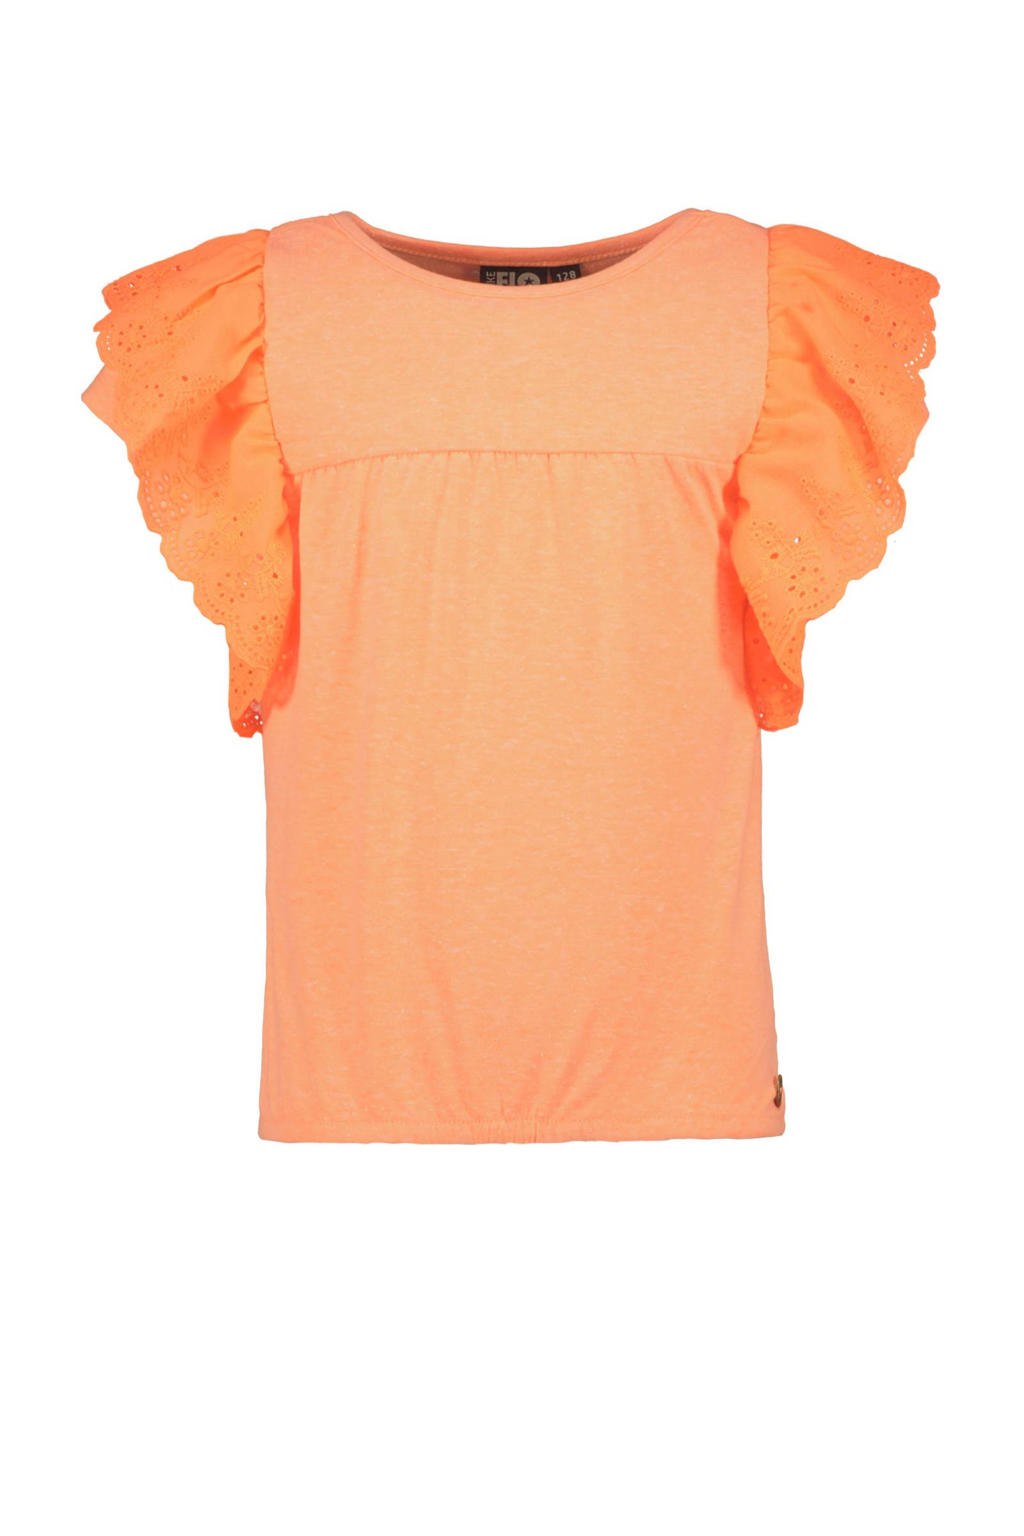 Oranje meisjes Like Flo T-shirt van katoen met korte mouwen, ronde hals en broderie